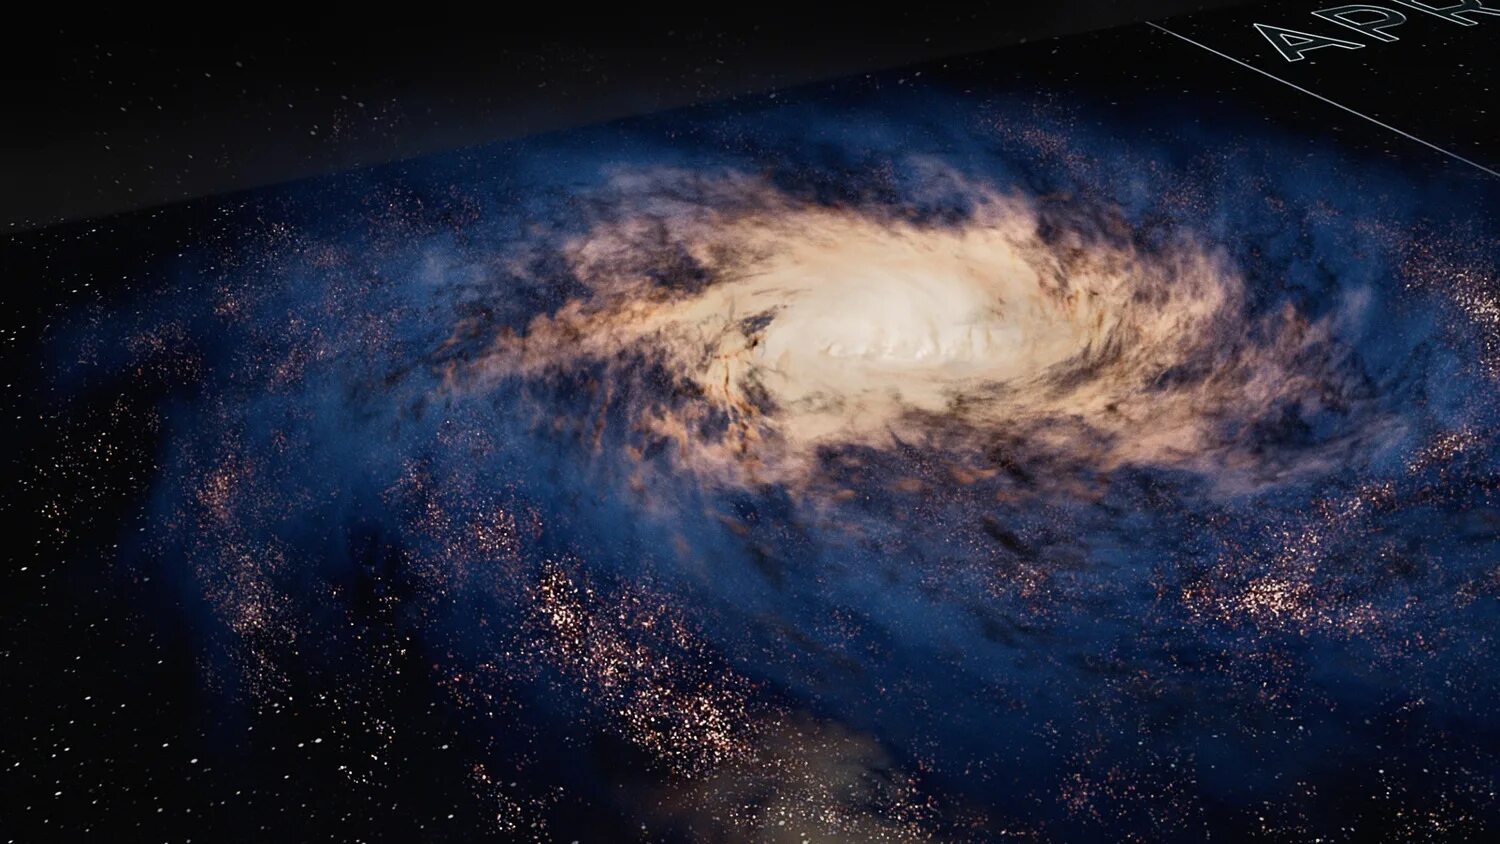 55 космических лет. Космос: пространство и время (Cosmos: a Spacetime Odyssey), 2014. National Geographic космос. Божественный космос.